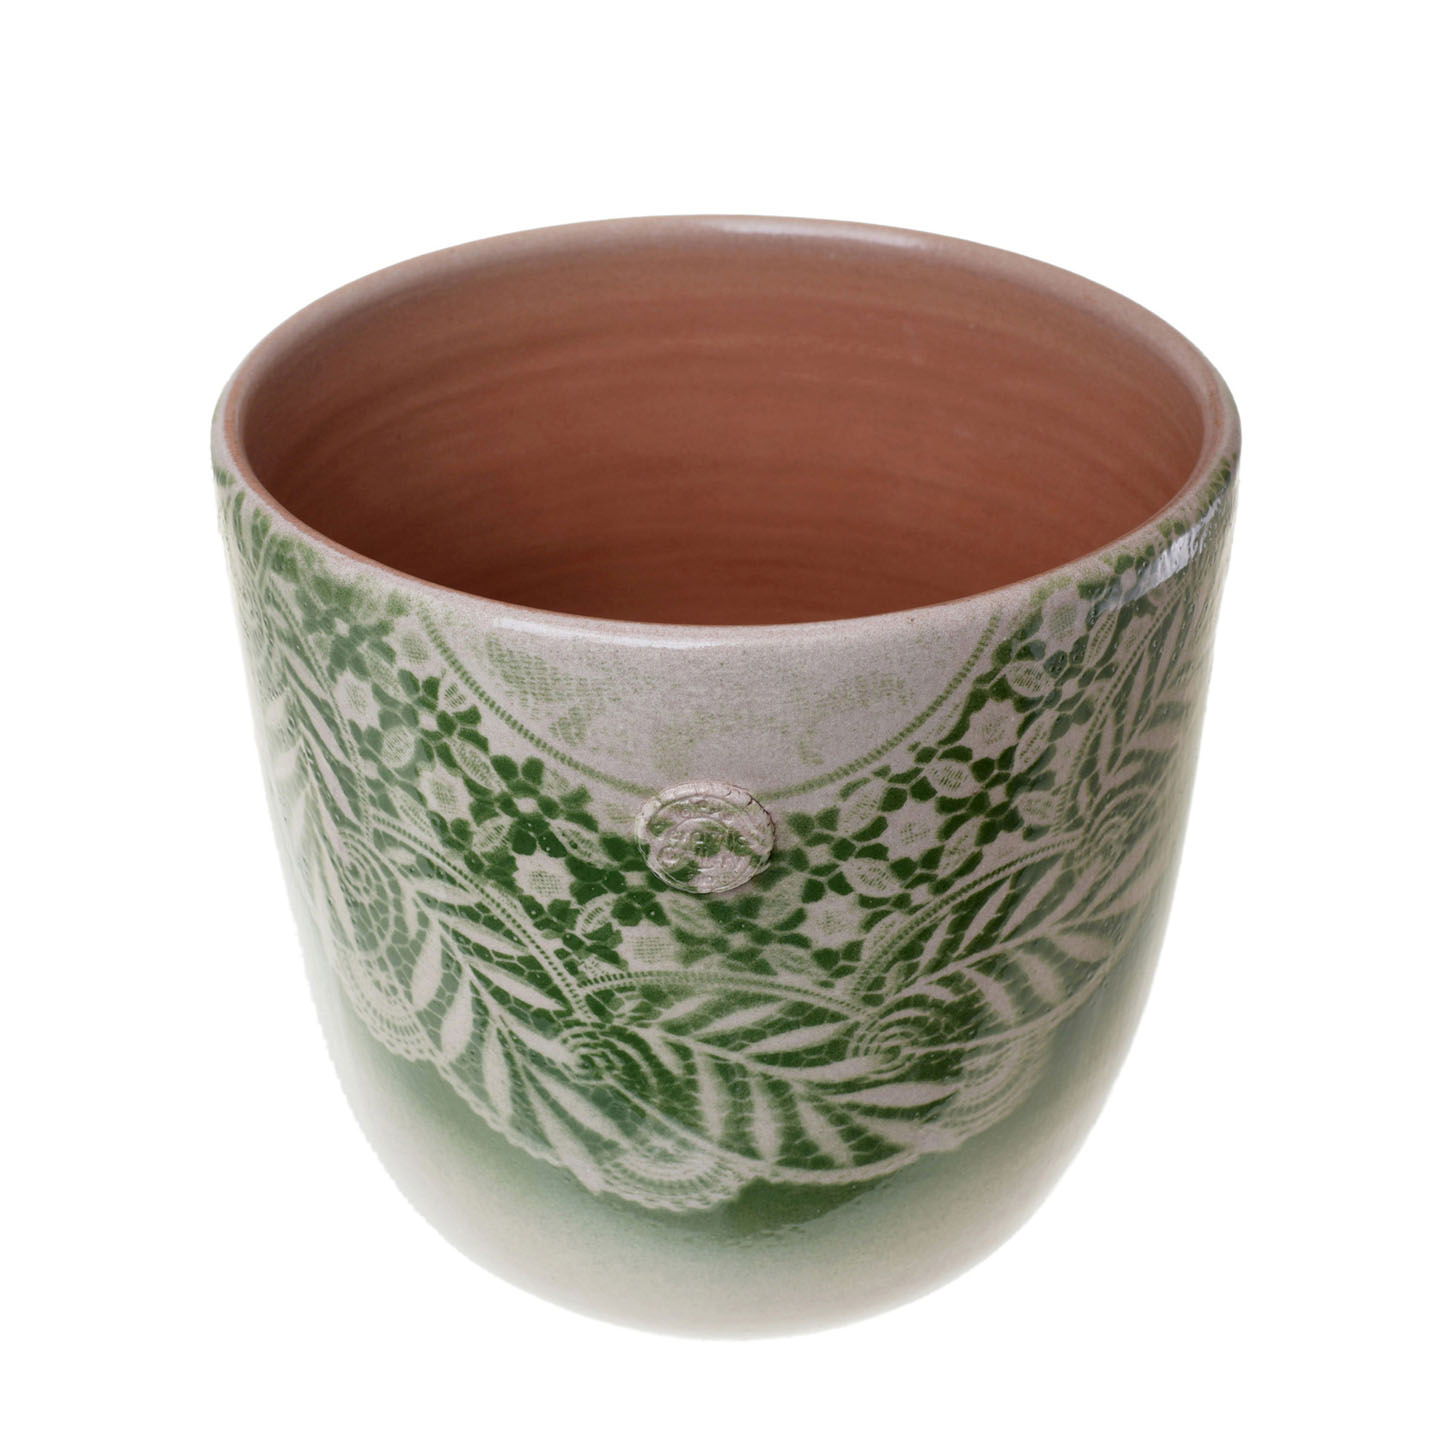 21075130-1 чашка для завтрака Jianwen, Кружева, керамика